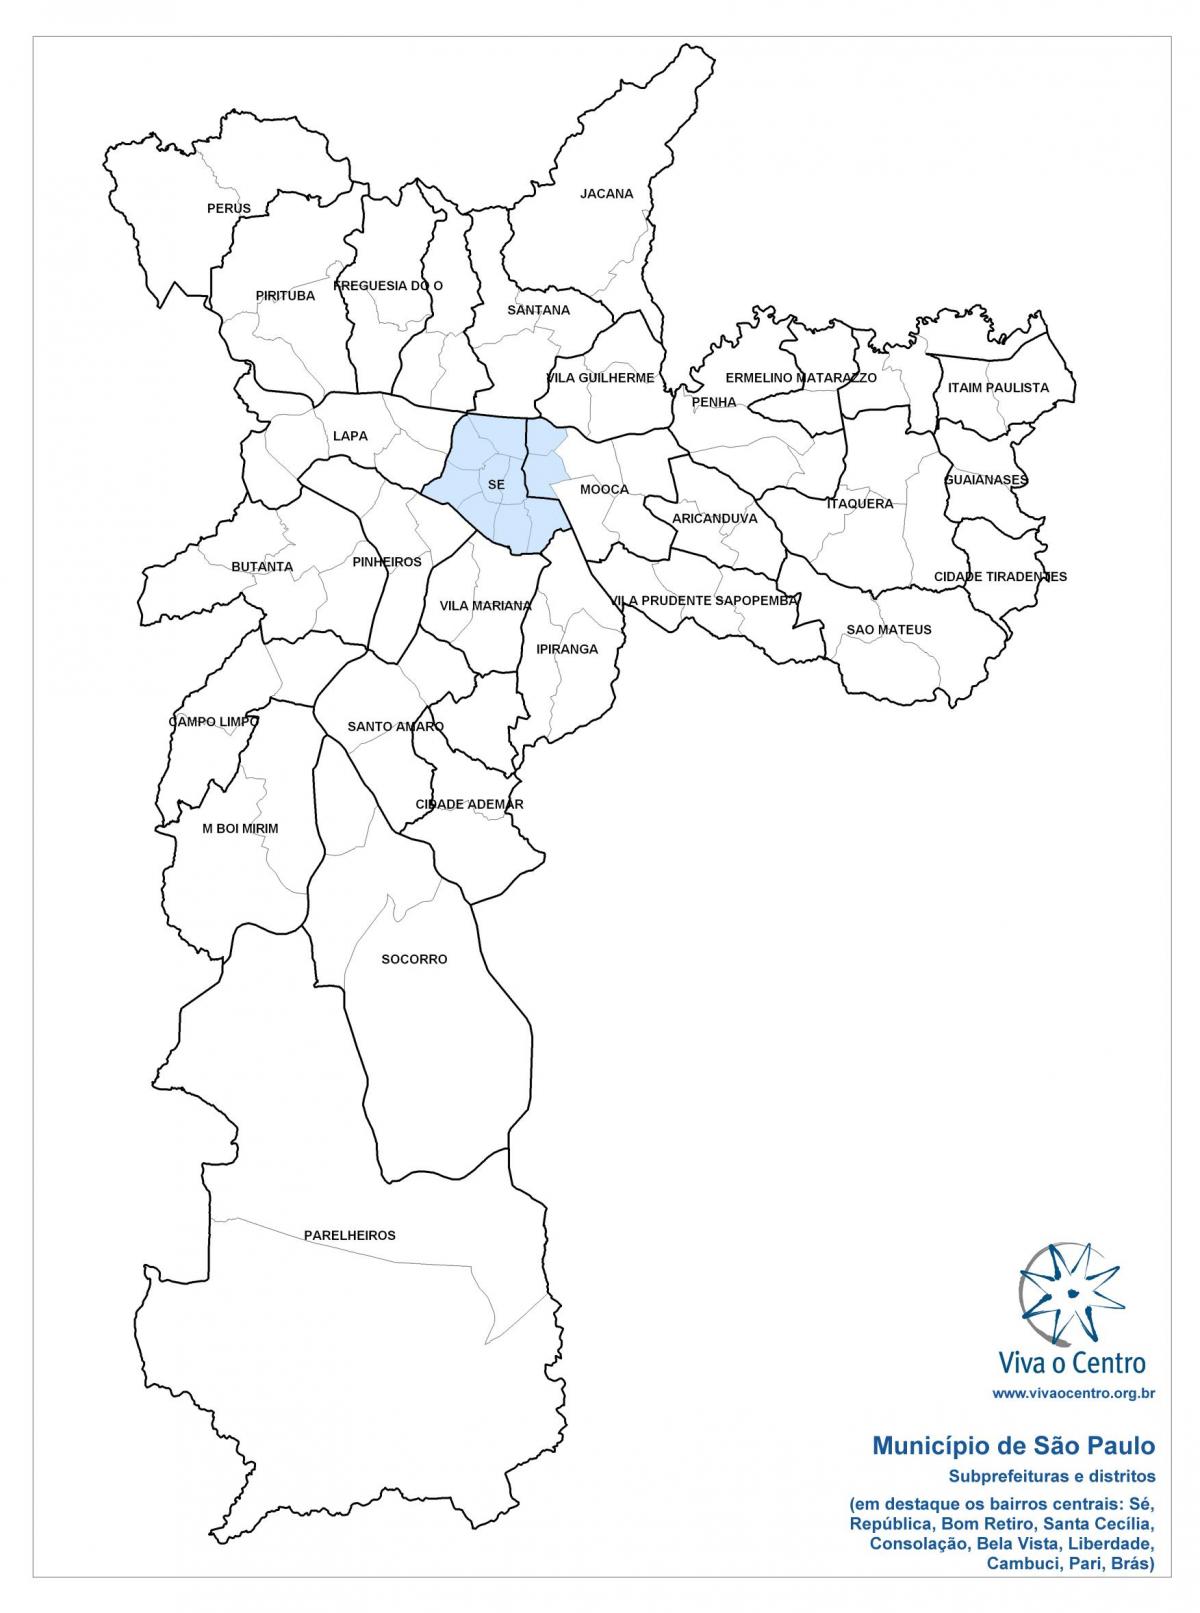 Karte der zentralen zone von São Paulo